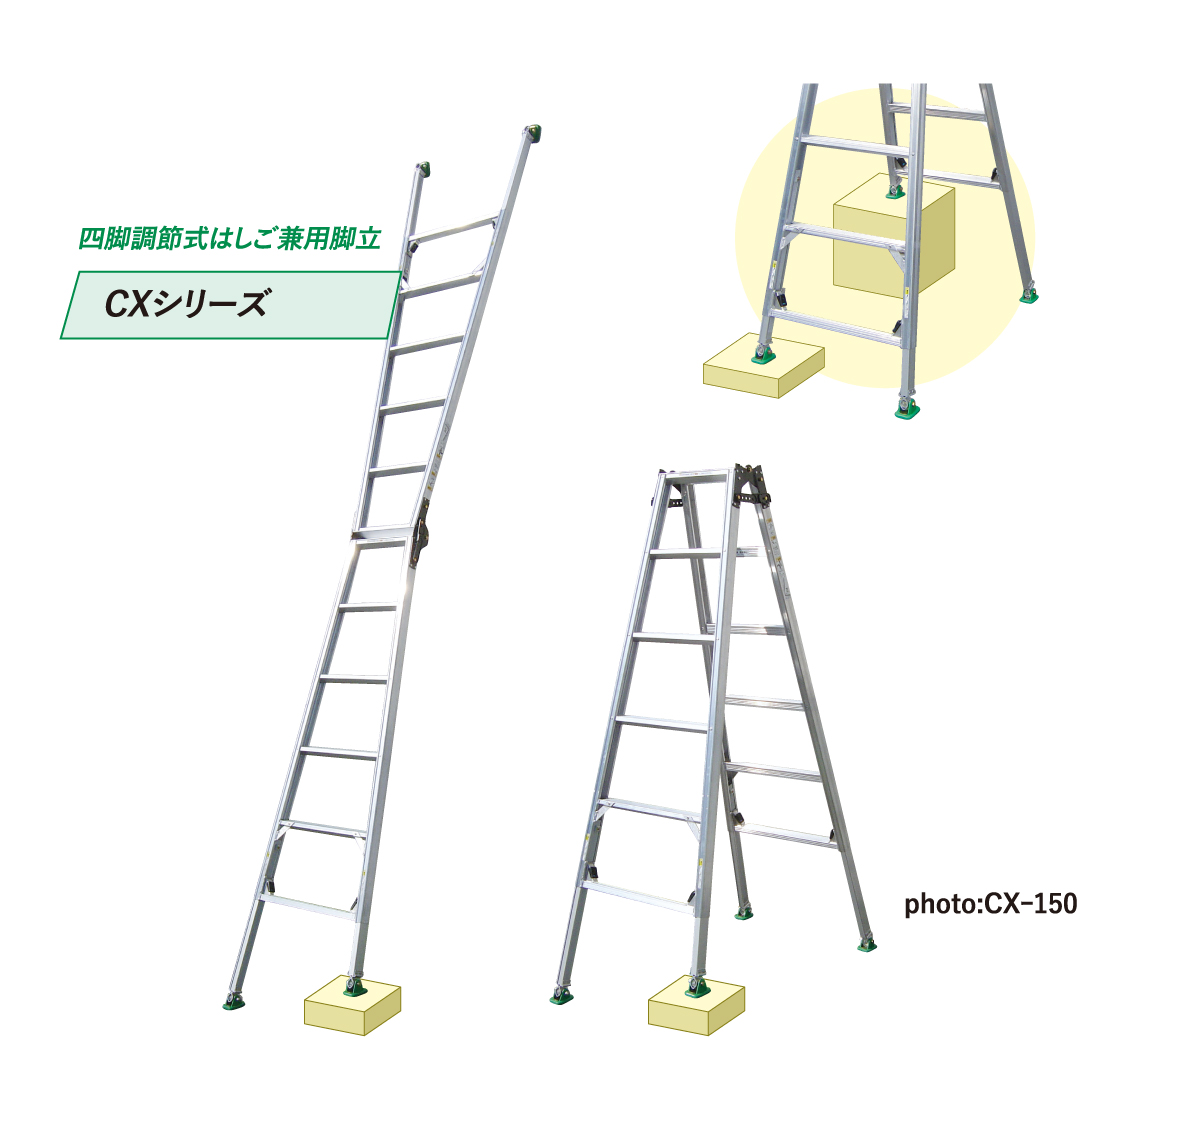 四脚調節式 はしご兼用脚立 ピッチ CX-180 脚立、はしご、足場